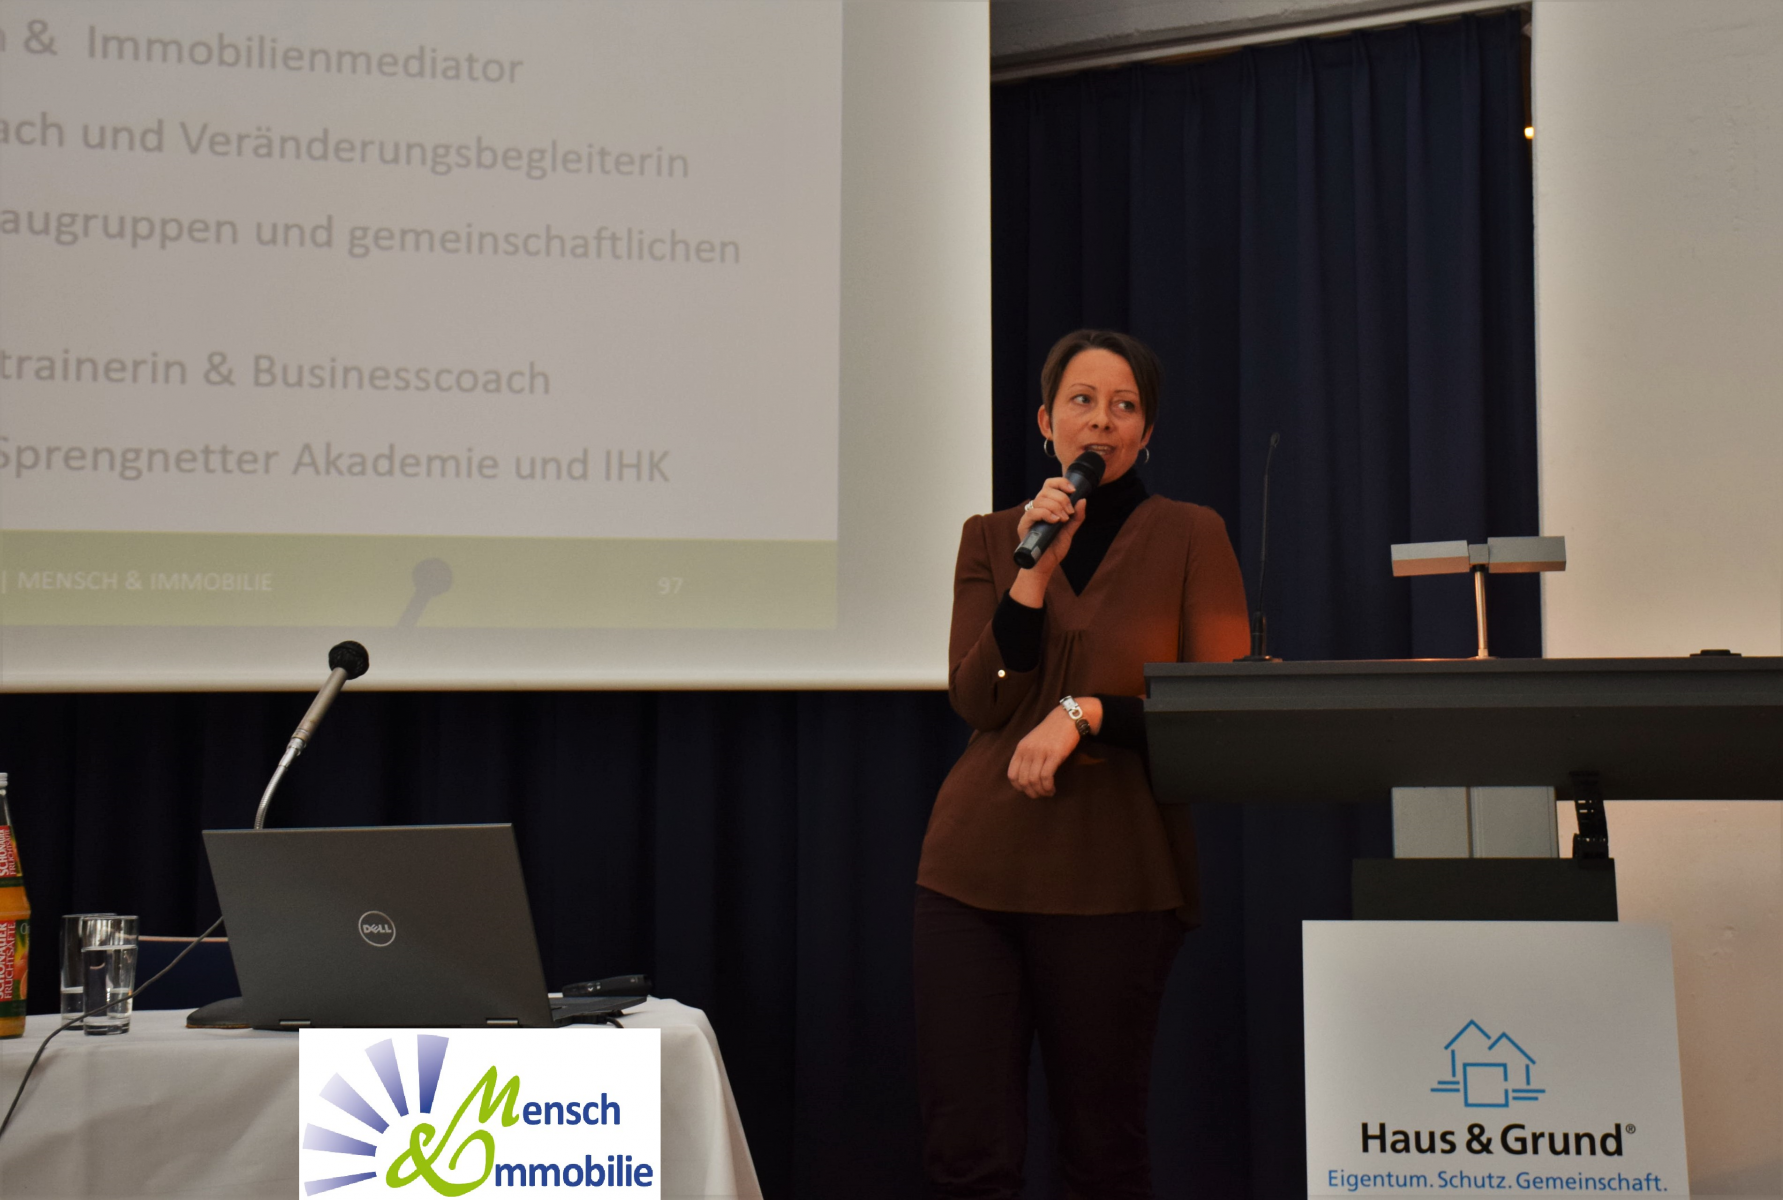 Vortrag über Immobiliencoaching, Haus & Grund Bonn, Mensch & Immobilie